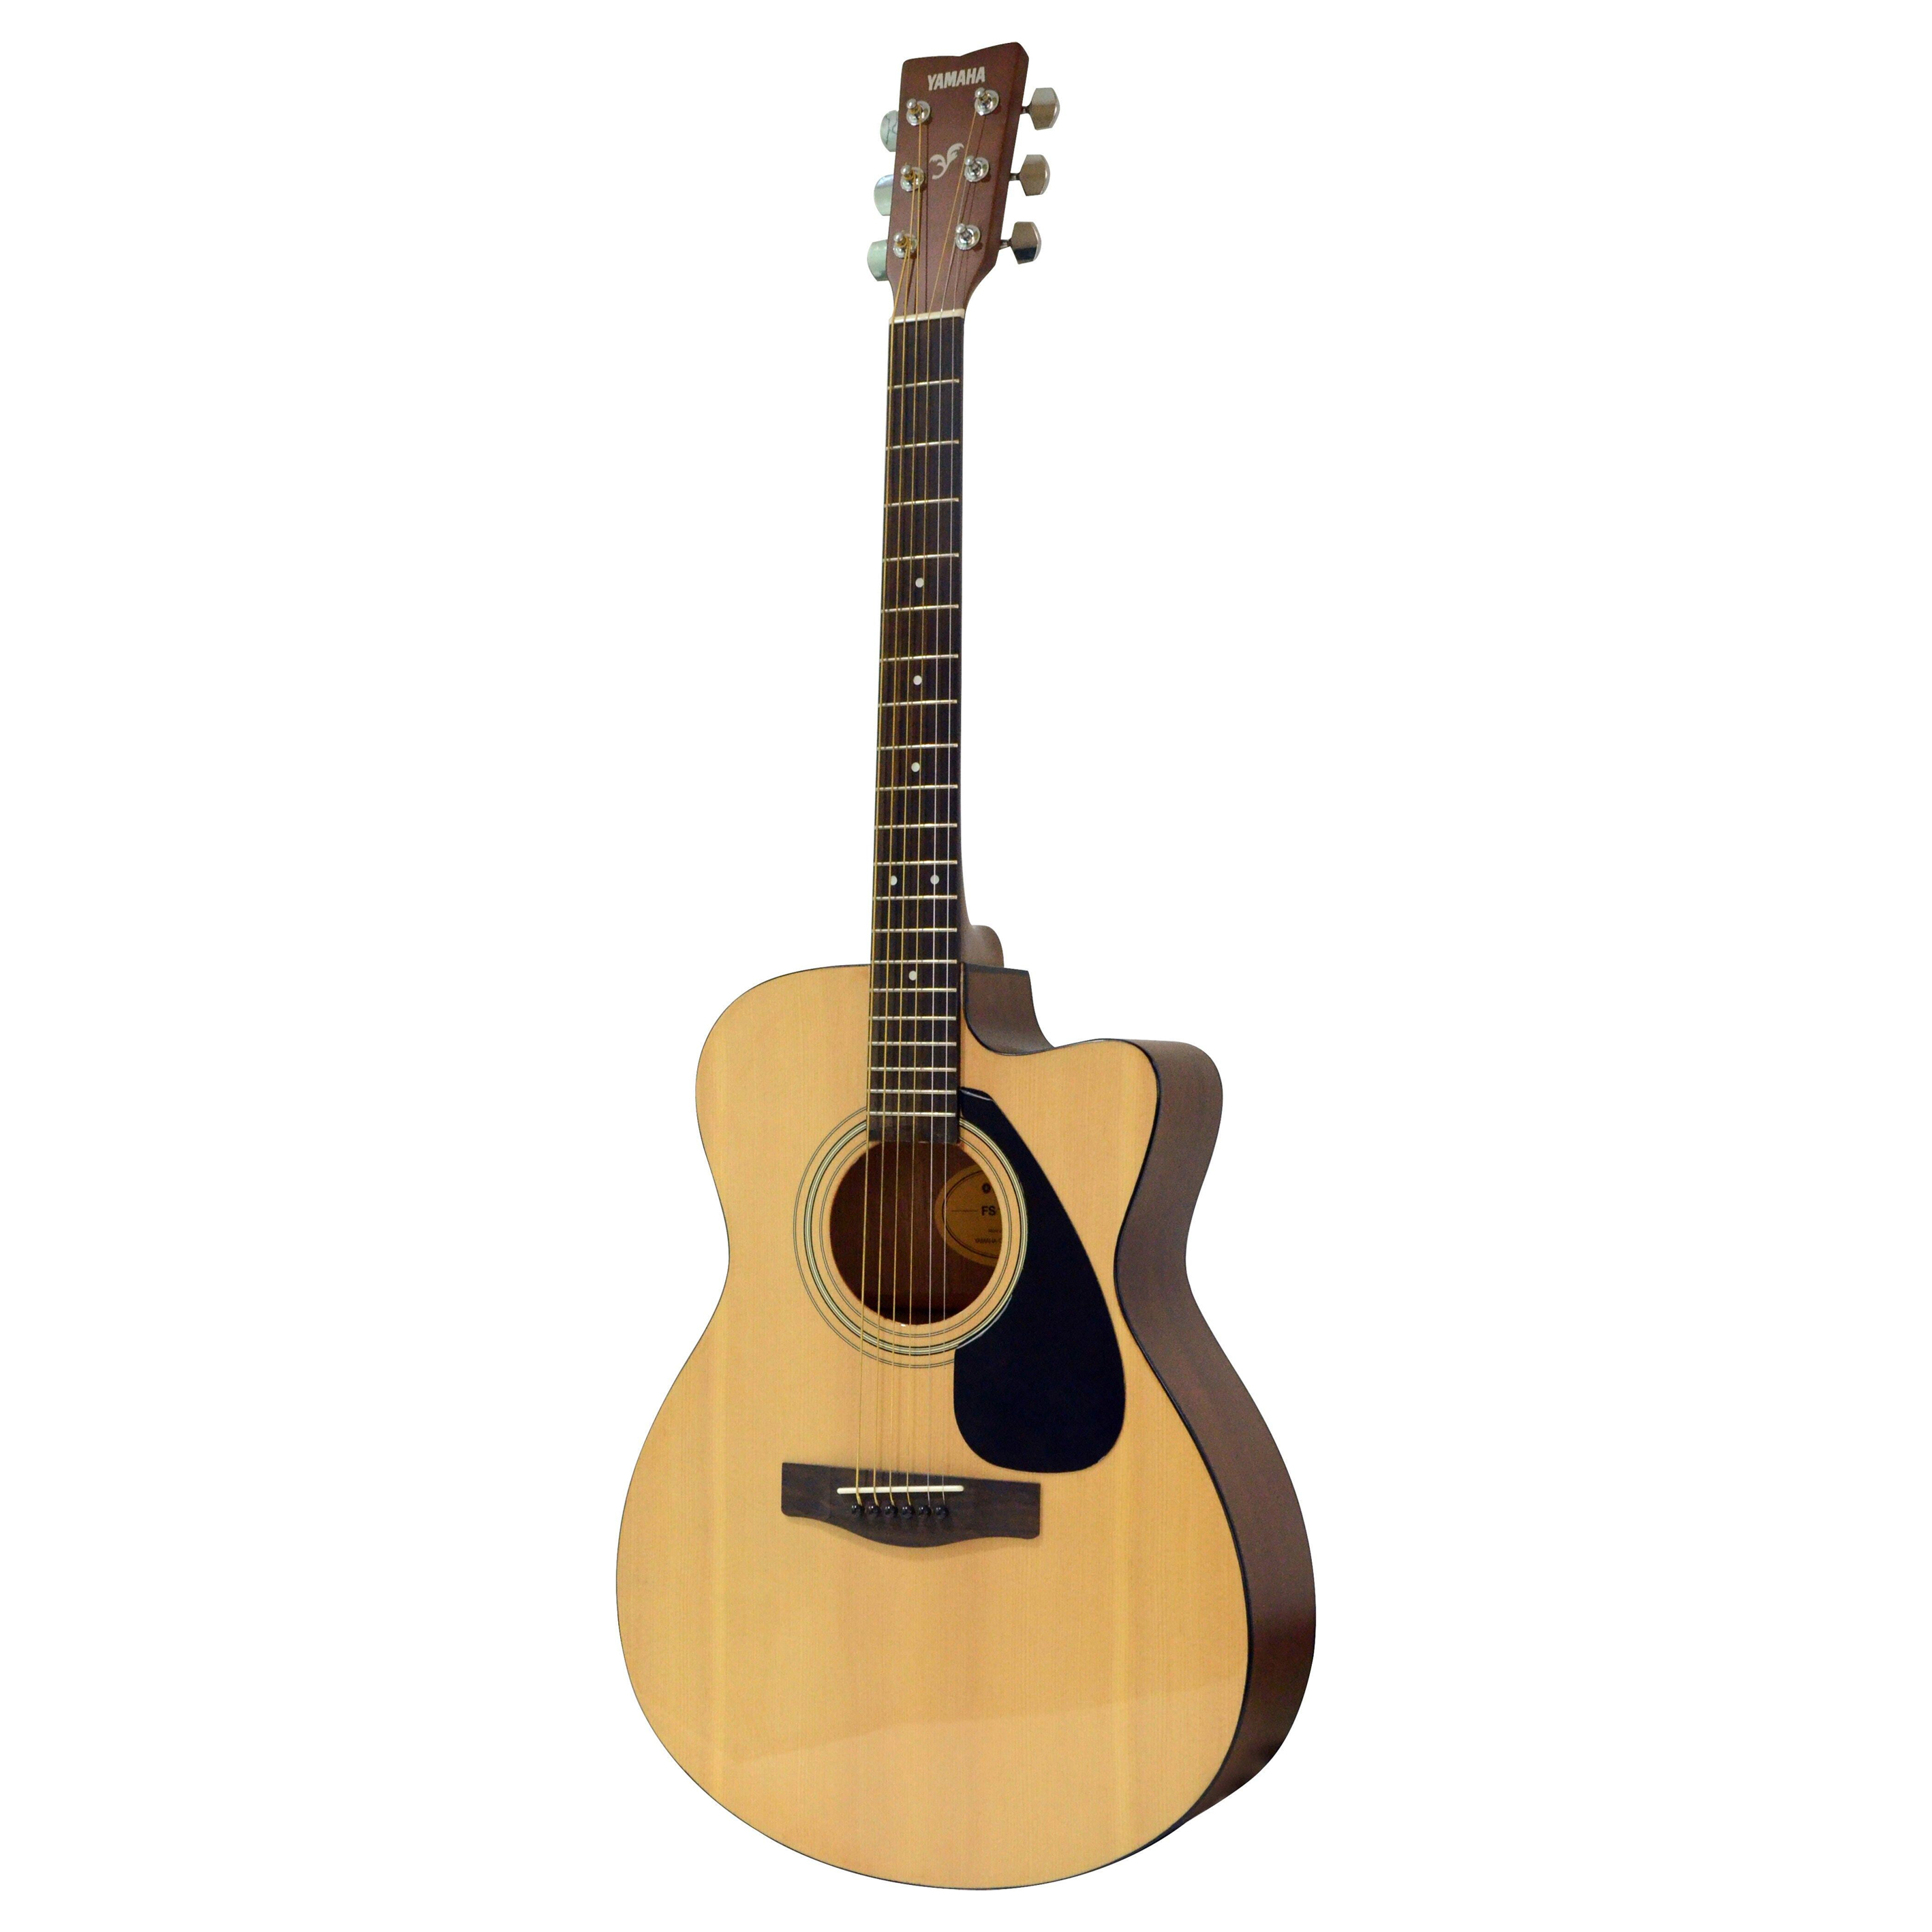 Đàn Guitar Acoustic Yamaha FS100C, Dáng Khuyết, Gỗ Vân Sam, Màu Tự Nhiên - Hàng Chính Hãng